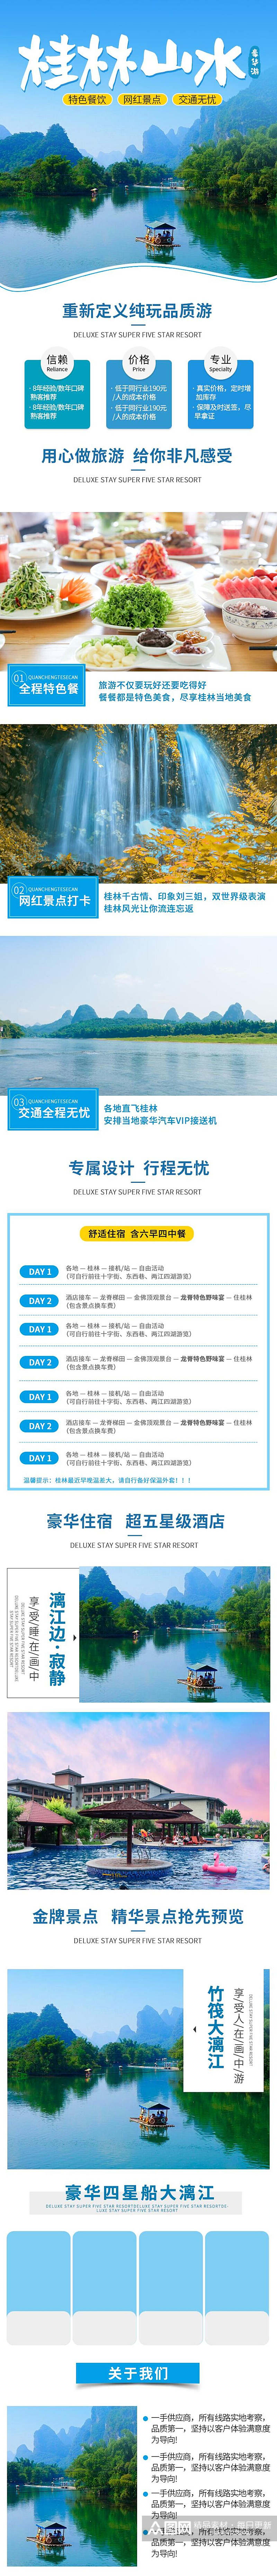 桂林山水旅游电商详情页素材